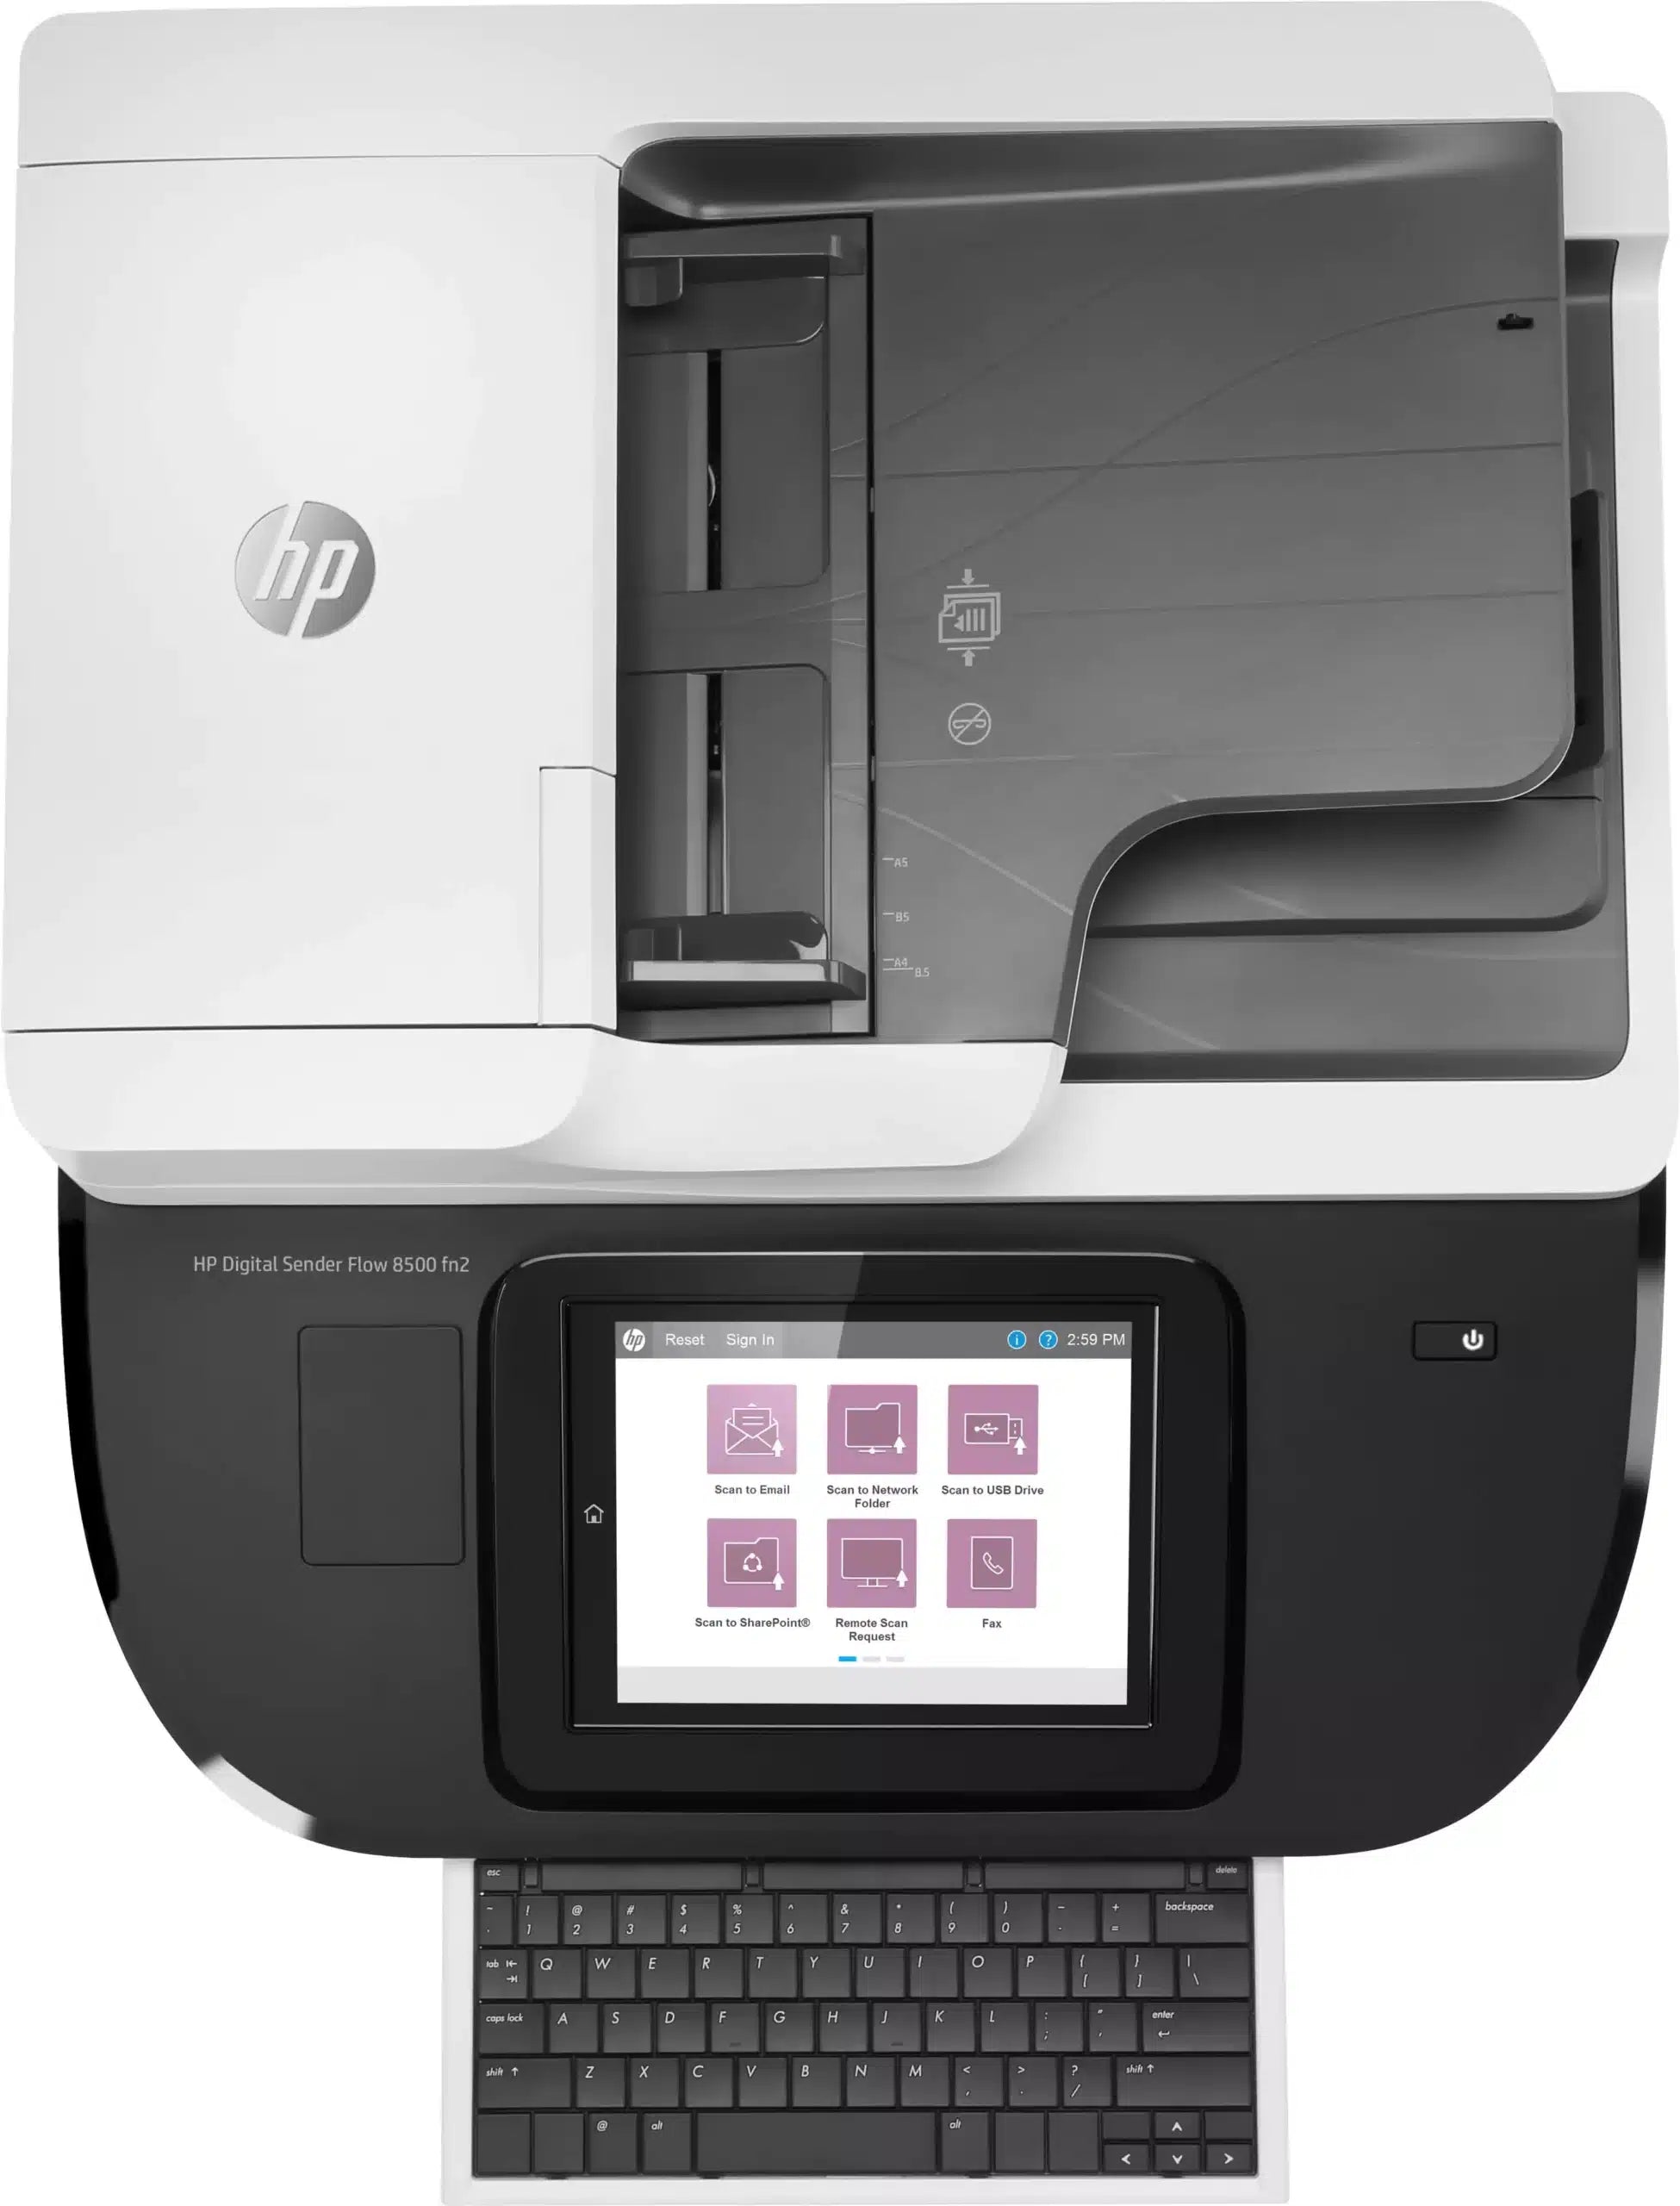 HP Scanjet Enterprise 8500 FN2